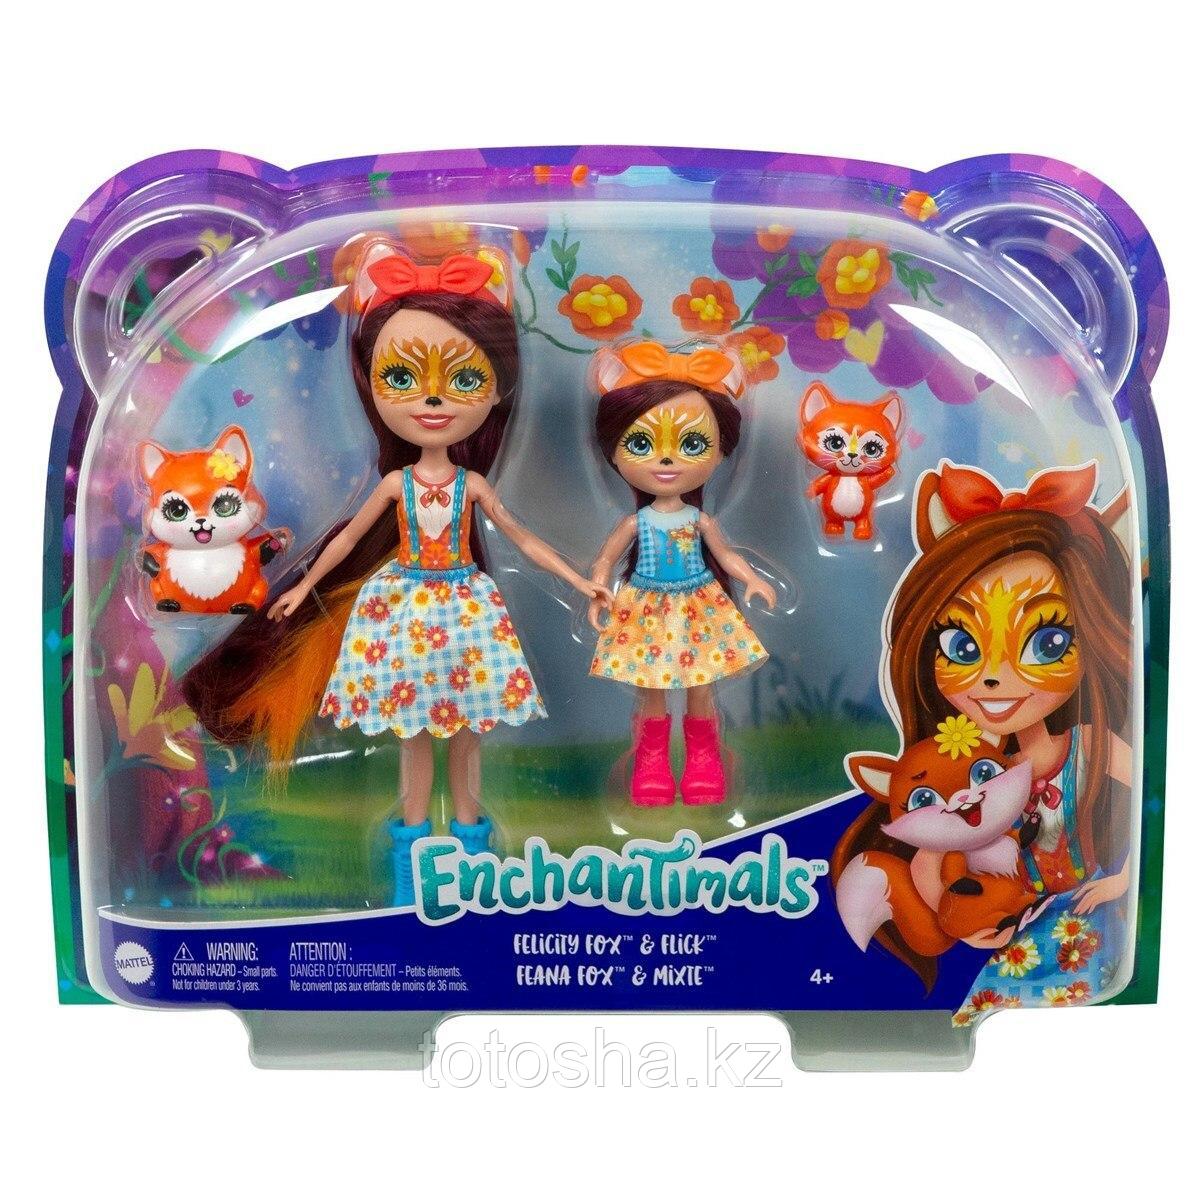 Куклы Enchantimals "Фелисити Лис с сестричкой Феаной Лис и питомцы " , Mattel HCF79/HCF81